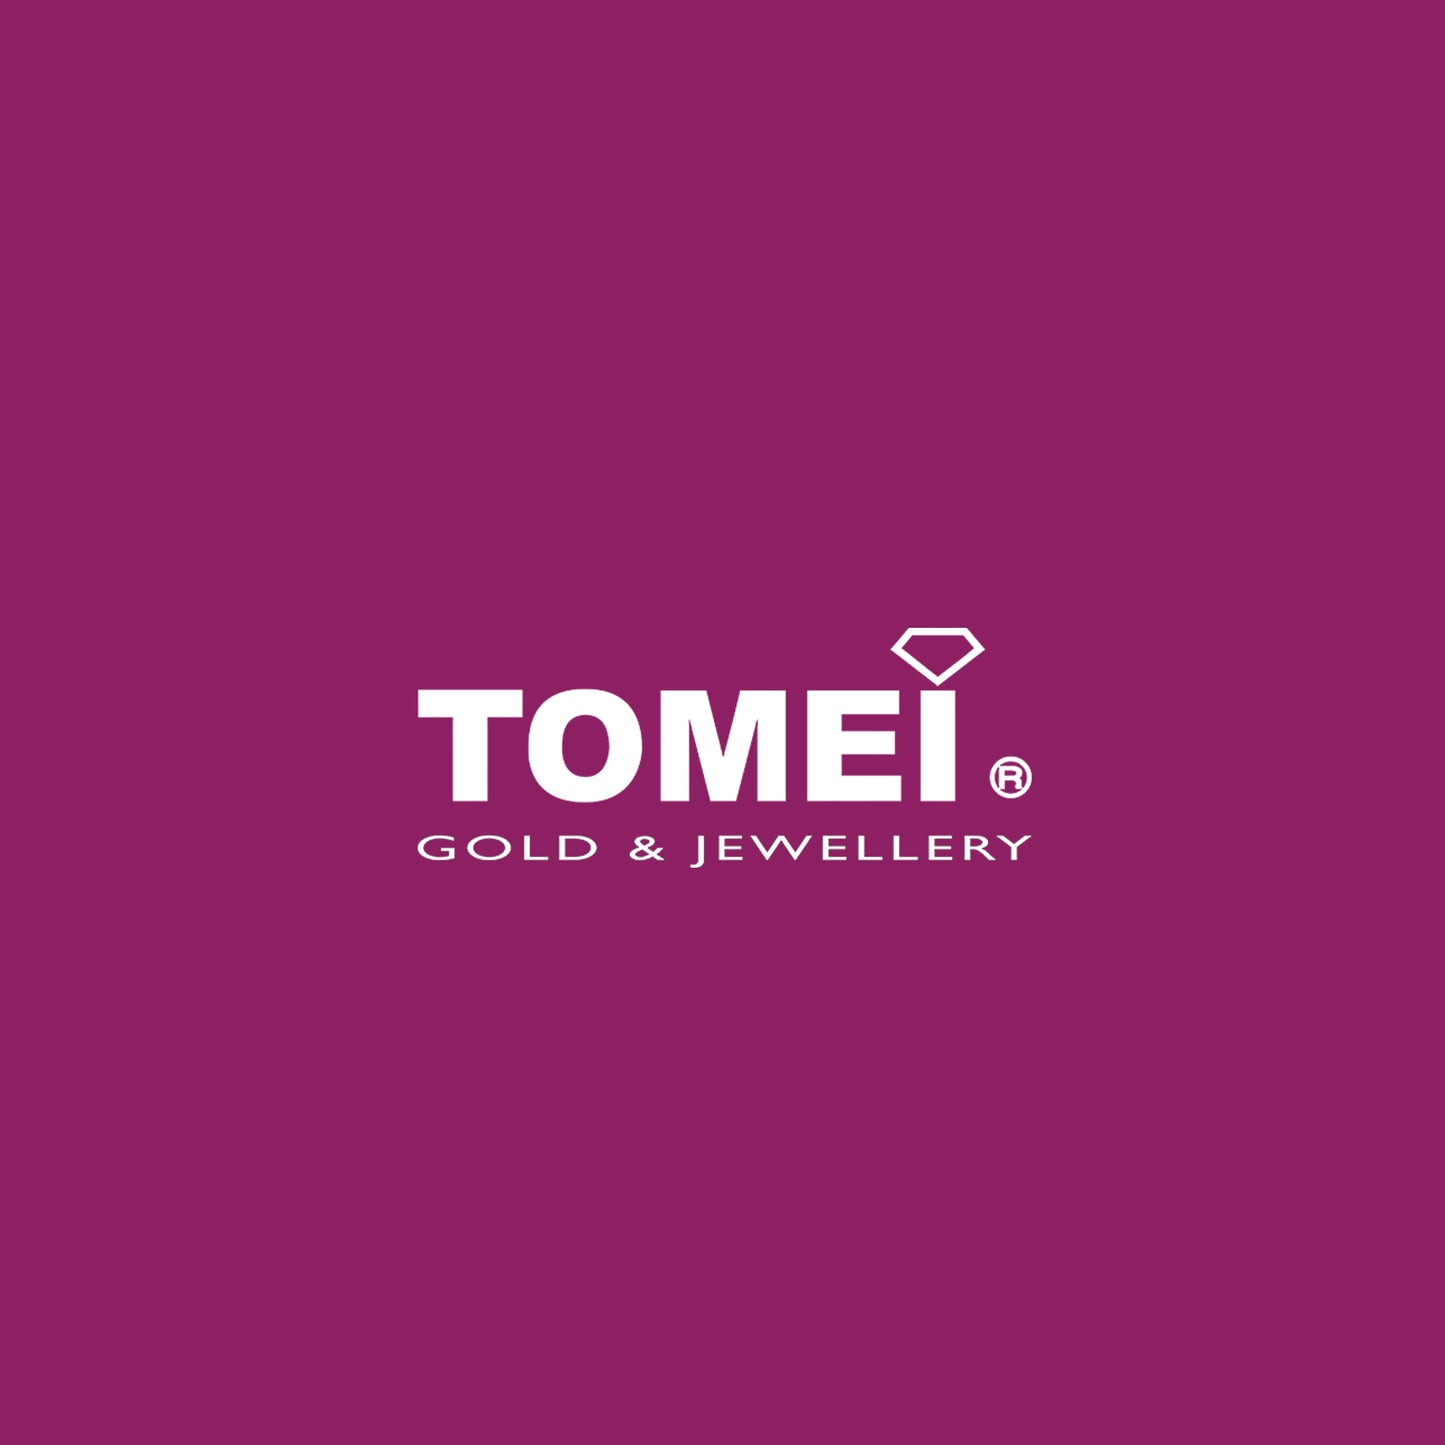 TOMEI Pendant, Diamond Pearl White Gold 750 (PD4873)